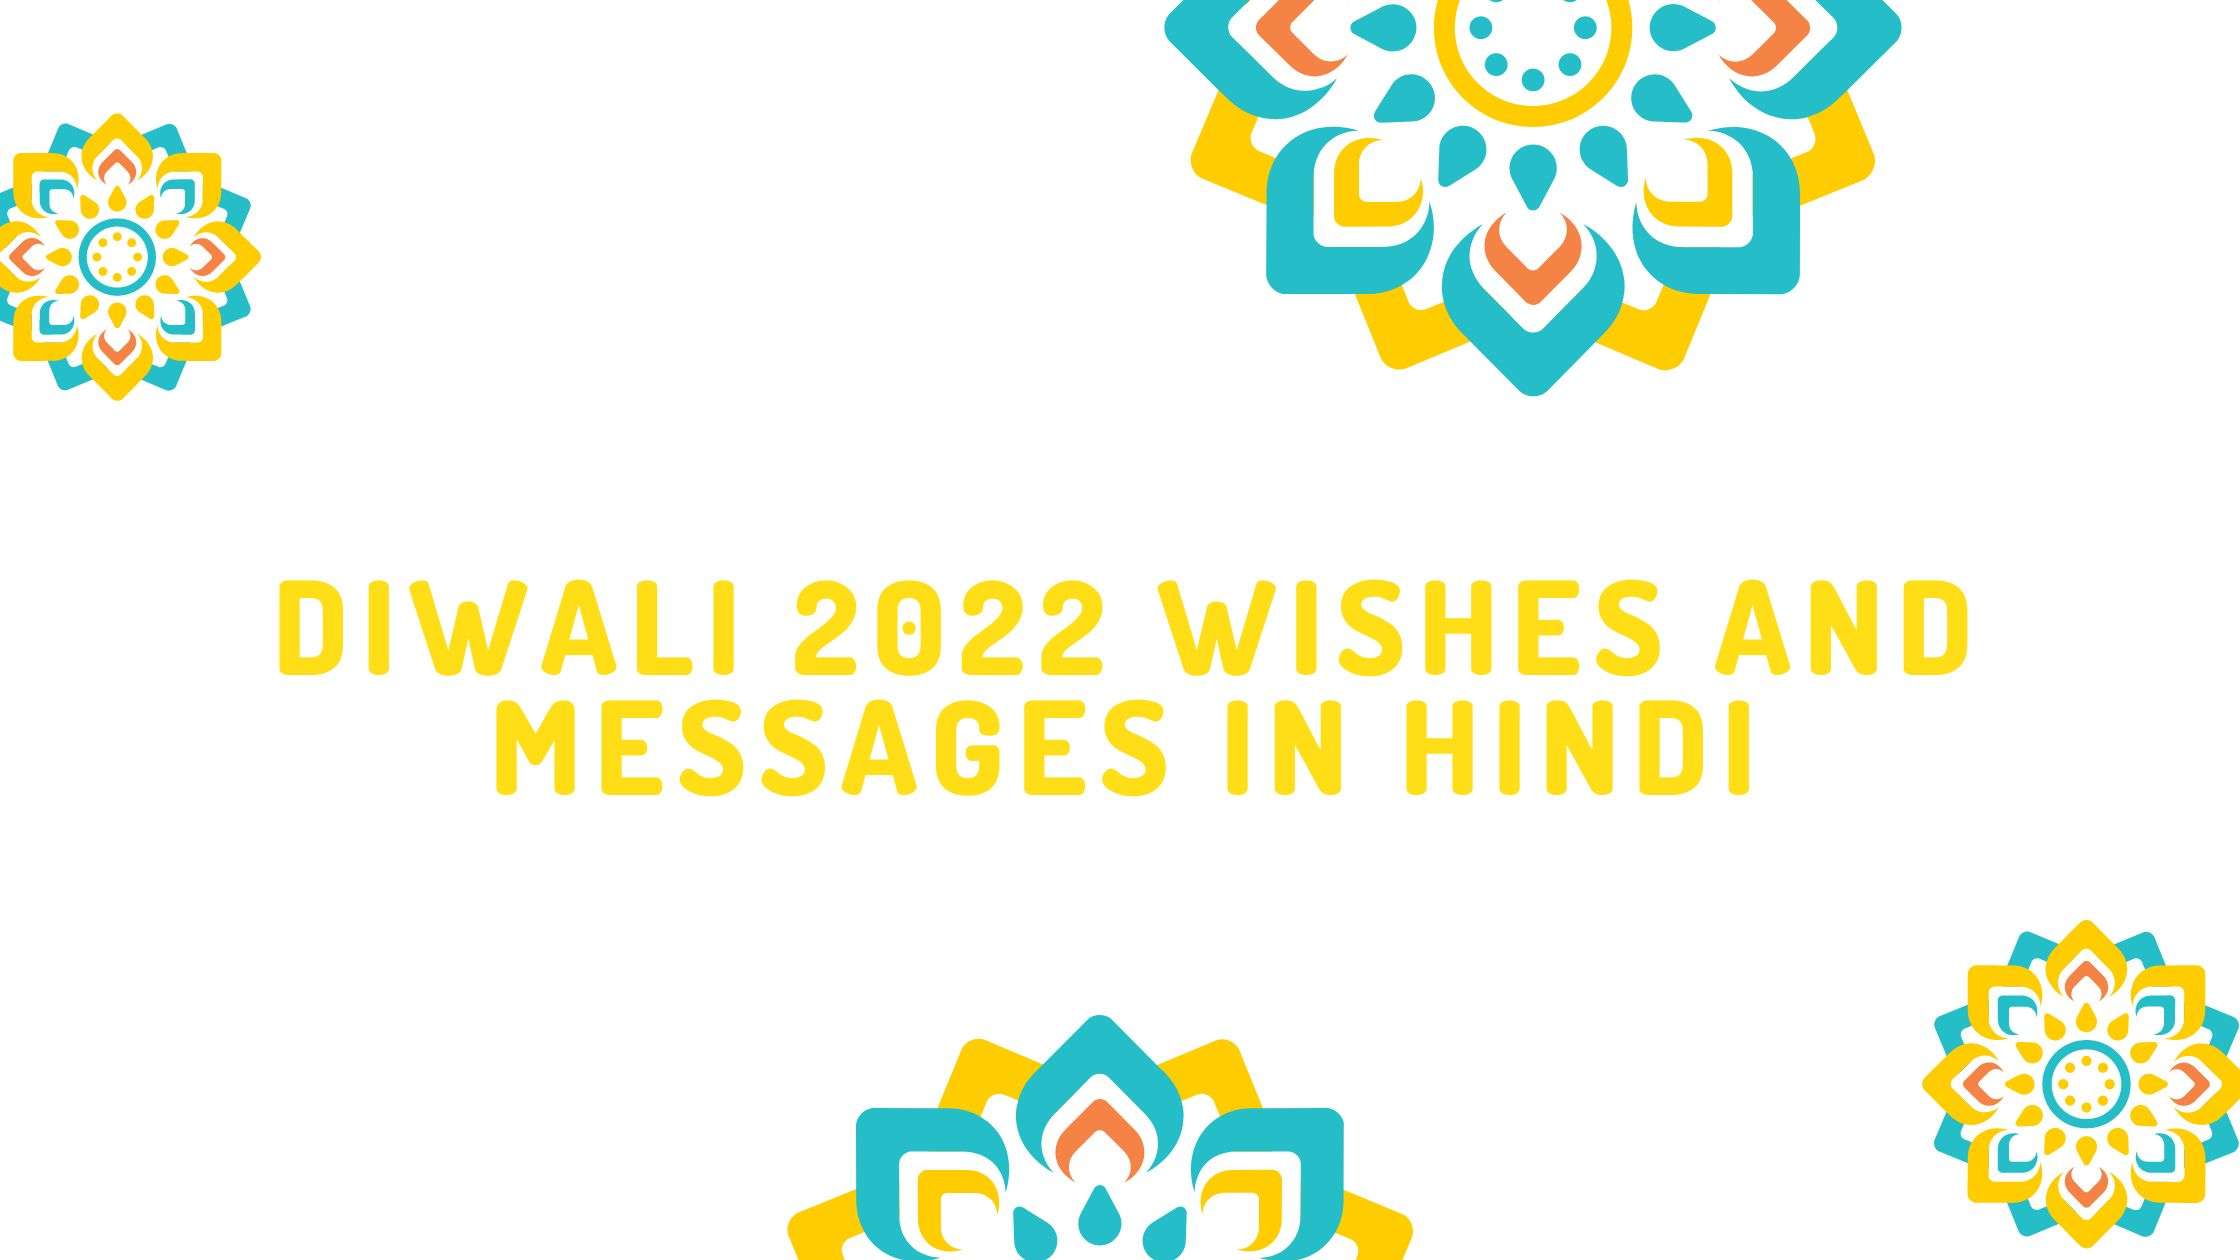 You are currently viewing दिवाली 2022 — यहां उन शुभकामनाओं और संदेशों (Diwali wishes and messages in Hindi) की सूची दी गई है जिन्हें आप अपने प्रियजनों के साथ साझा कर सकते हैं